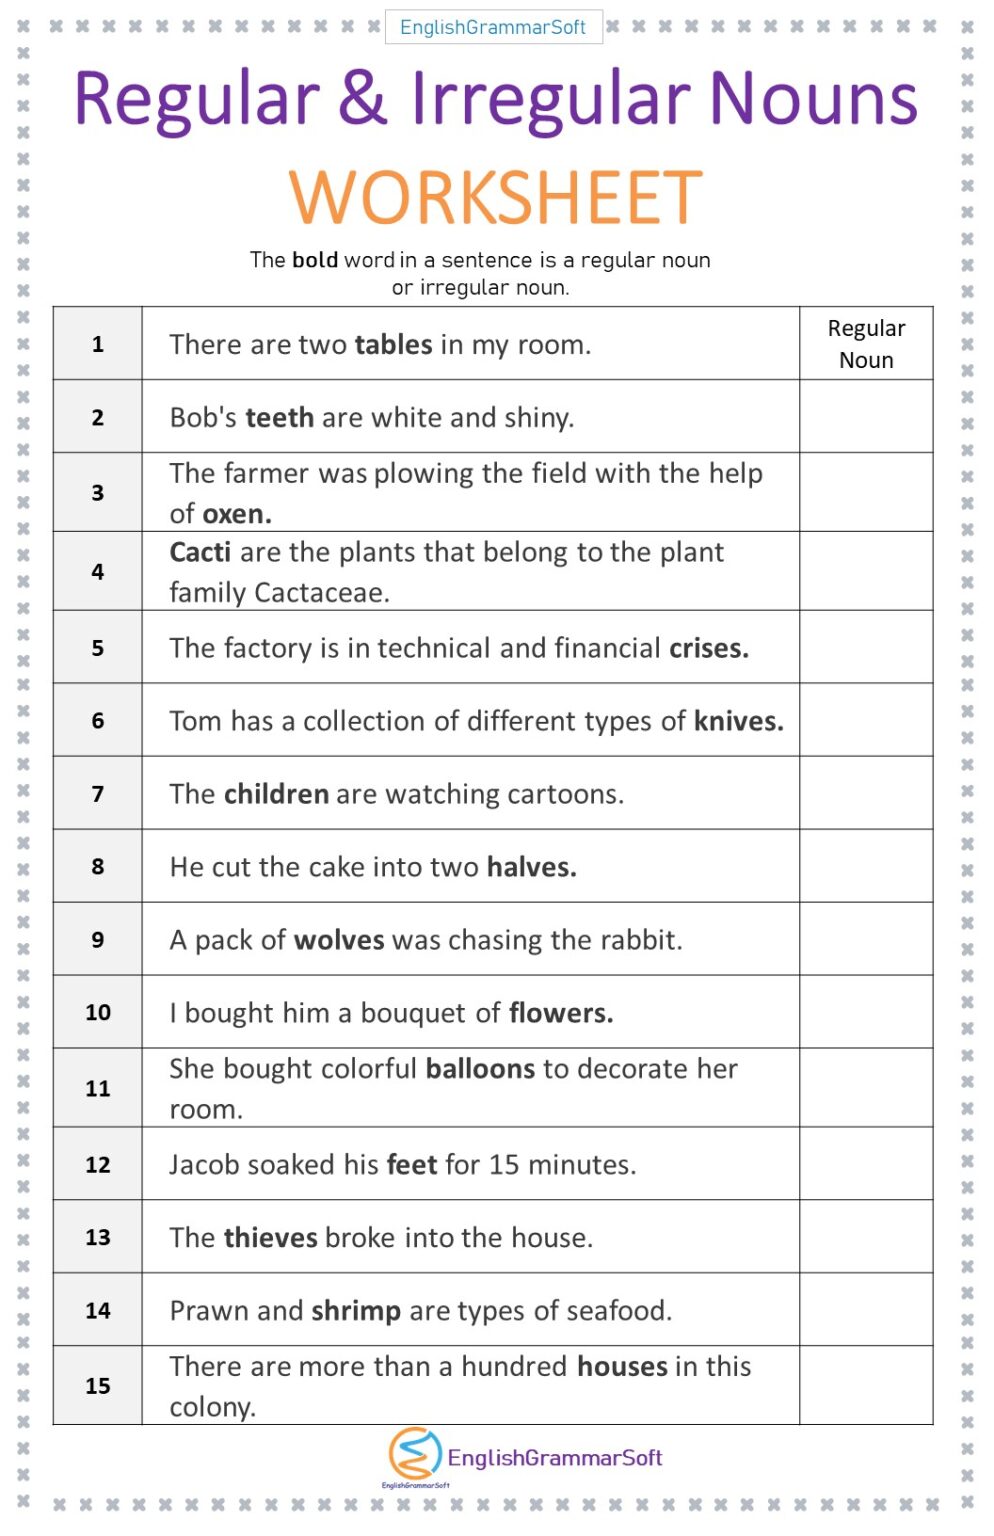 Identifying Regular And Irregular Nouns Worksheet